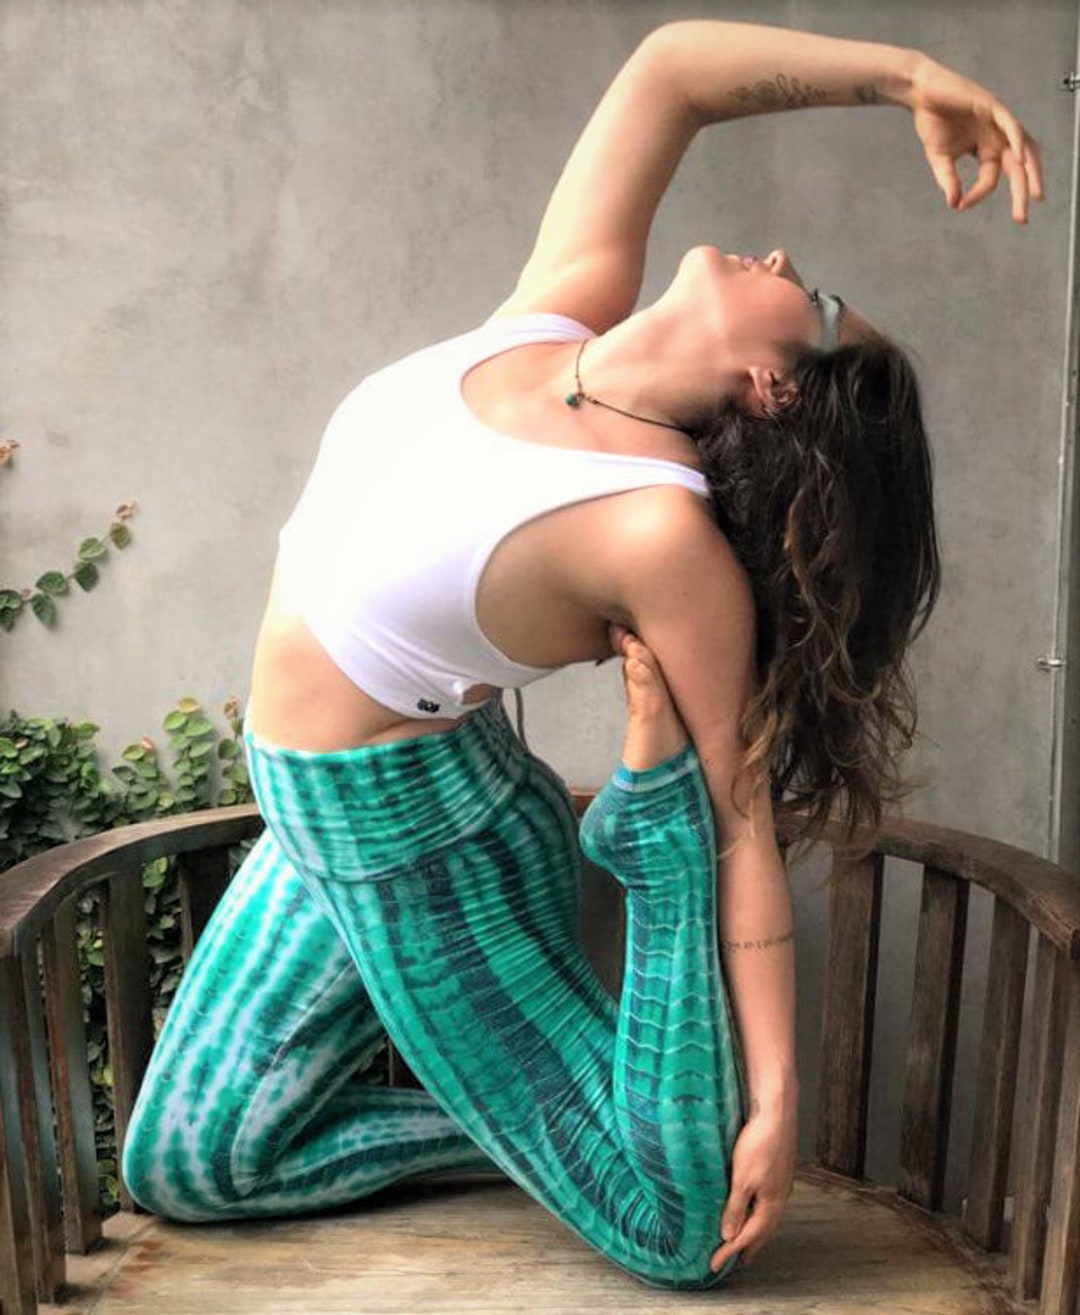 Aqua Tie Dye Yoga Pants by Lotus Tribe / Yoga Clothing / Yoga